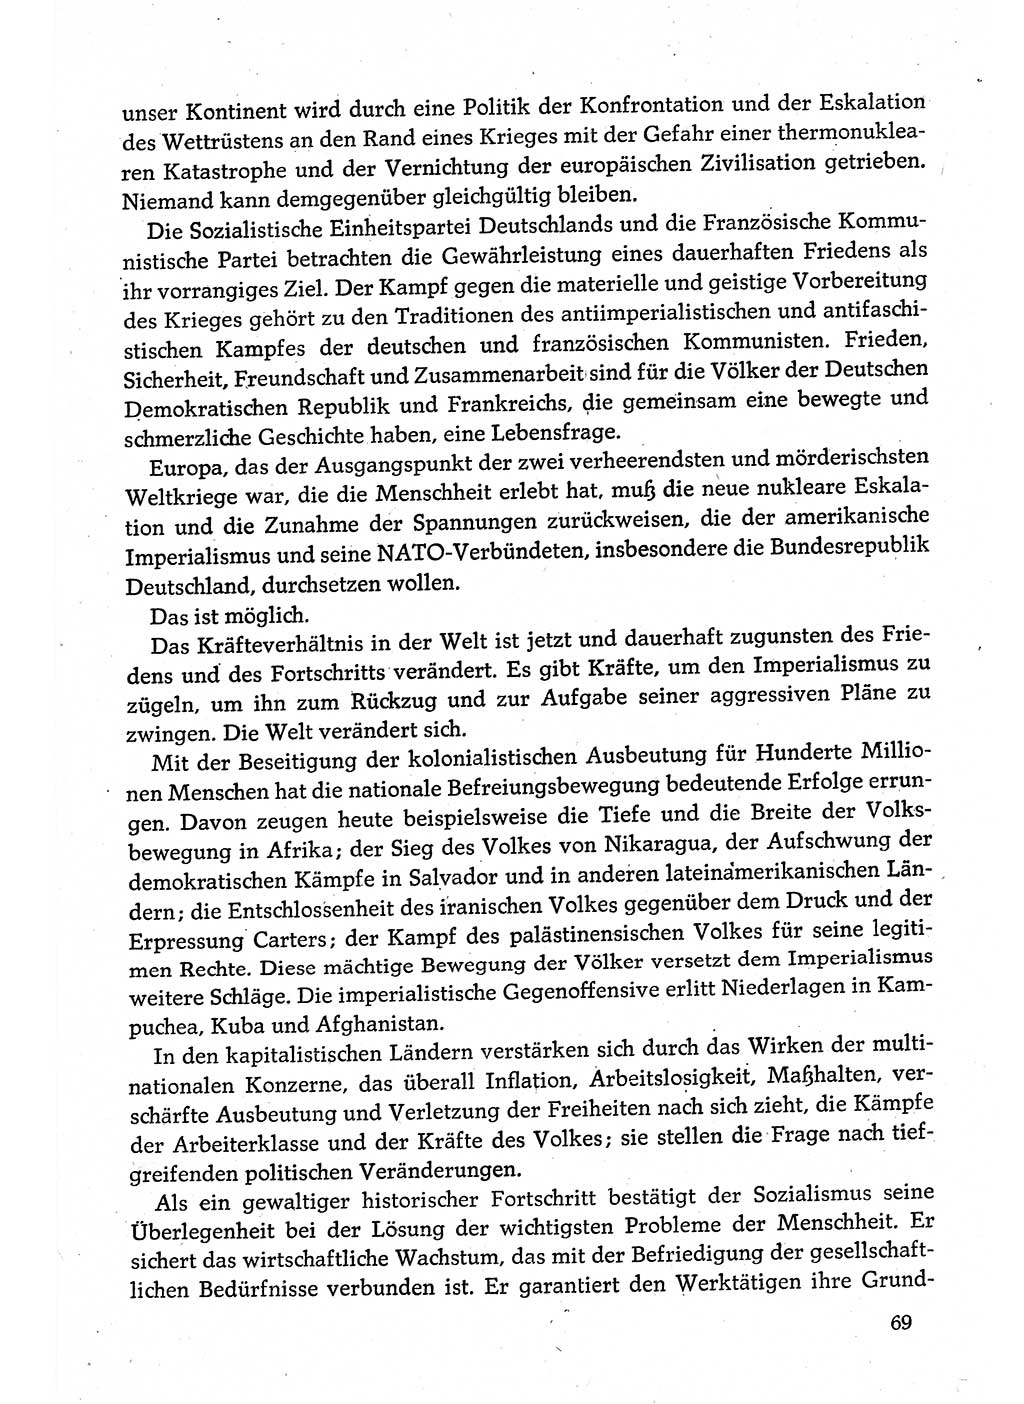 Dokumente der Sozialistischen Einheitspartei Deutschlands (SED) [Deutsche Demokratische Republik (DDR)] 1980-1981, Seite 69 (Dok. SED DDR 1980-1981, S. 69)